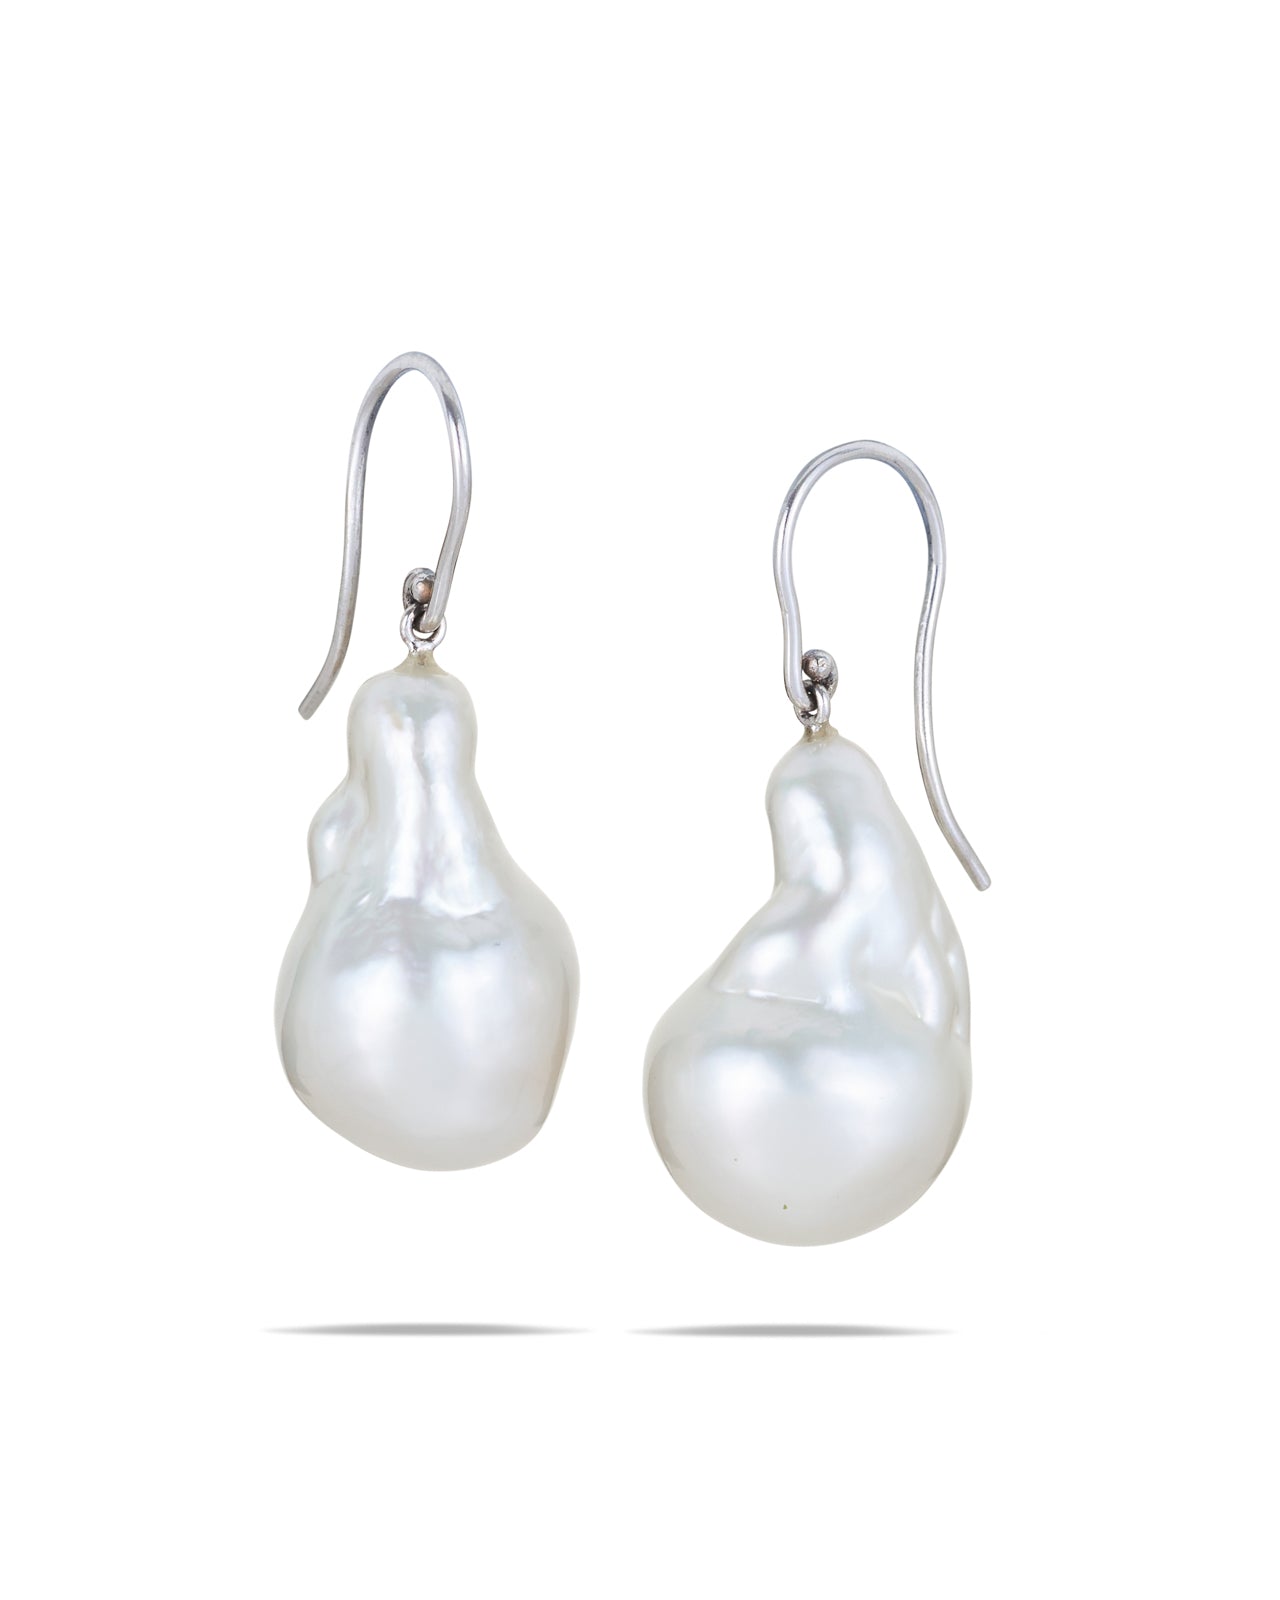 Australian South Sea Pearl Drop Earrings